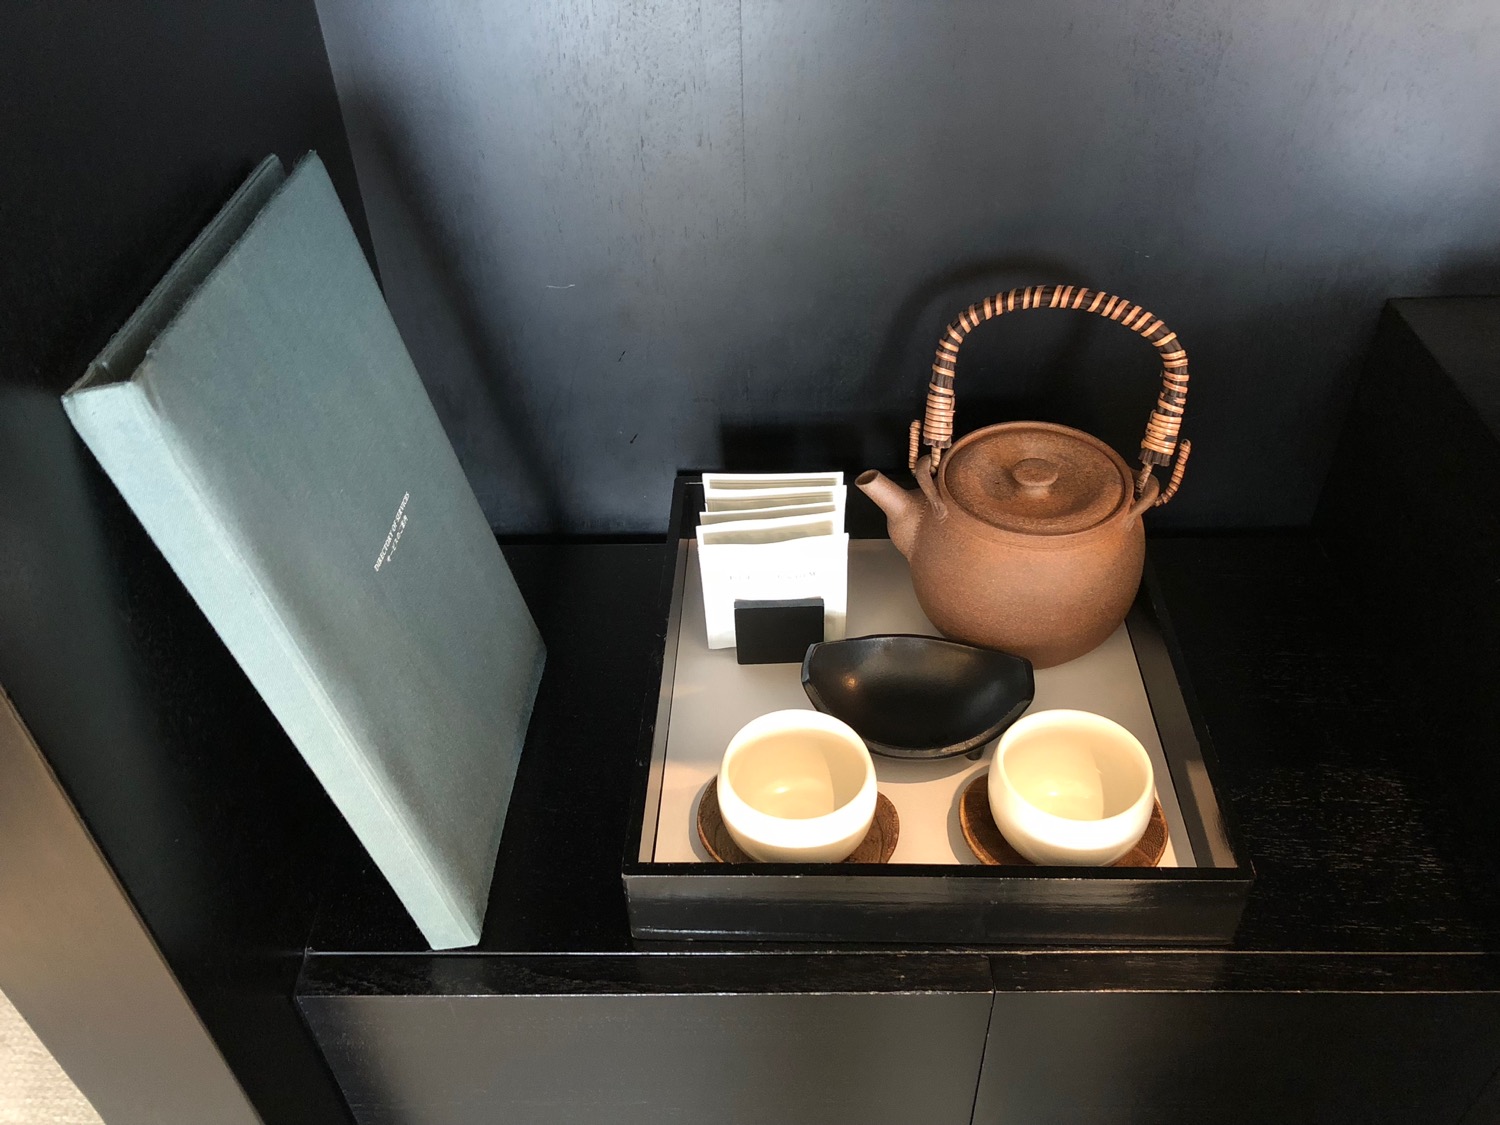 a tea set on a tray